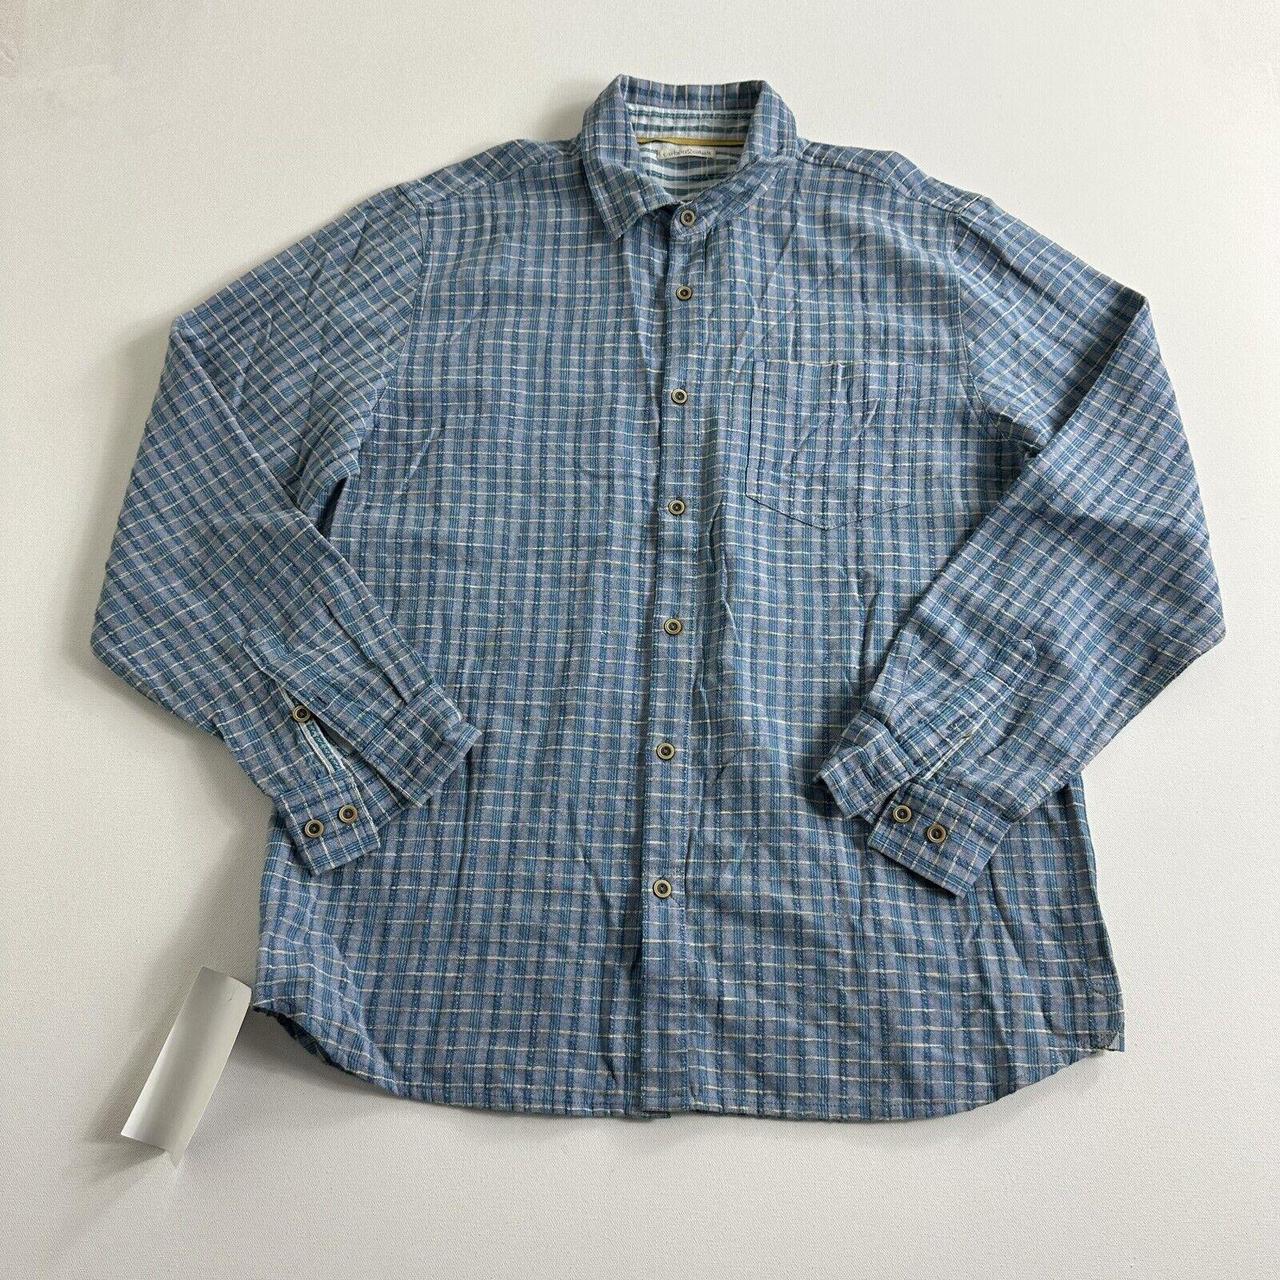 Carbon 2 Cobalt Shirt Mens Size Medium Button Up... - Depop